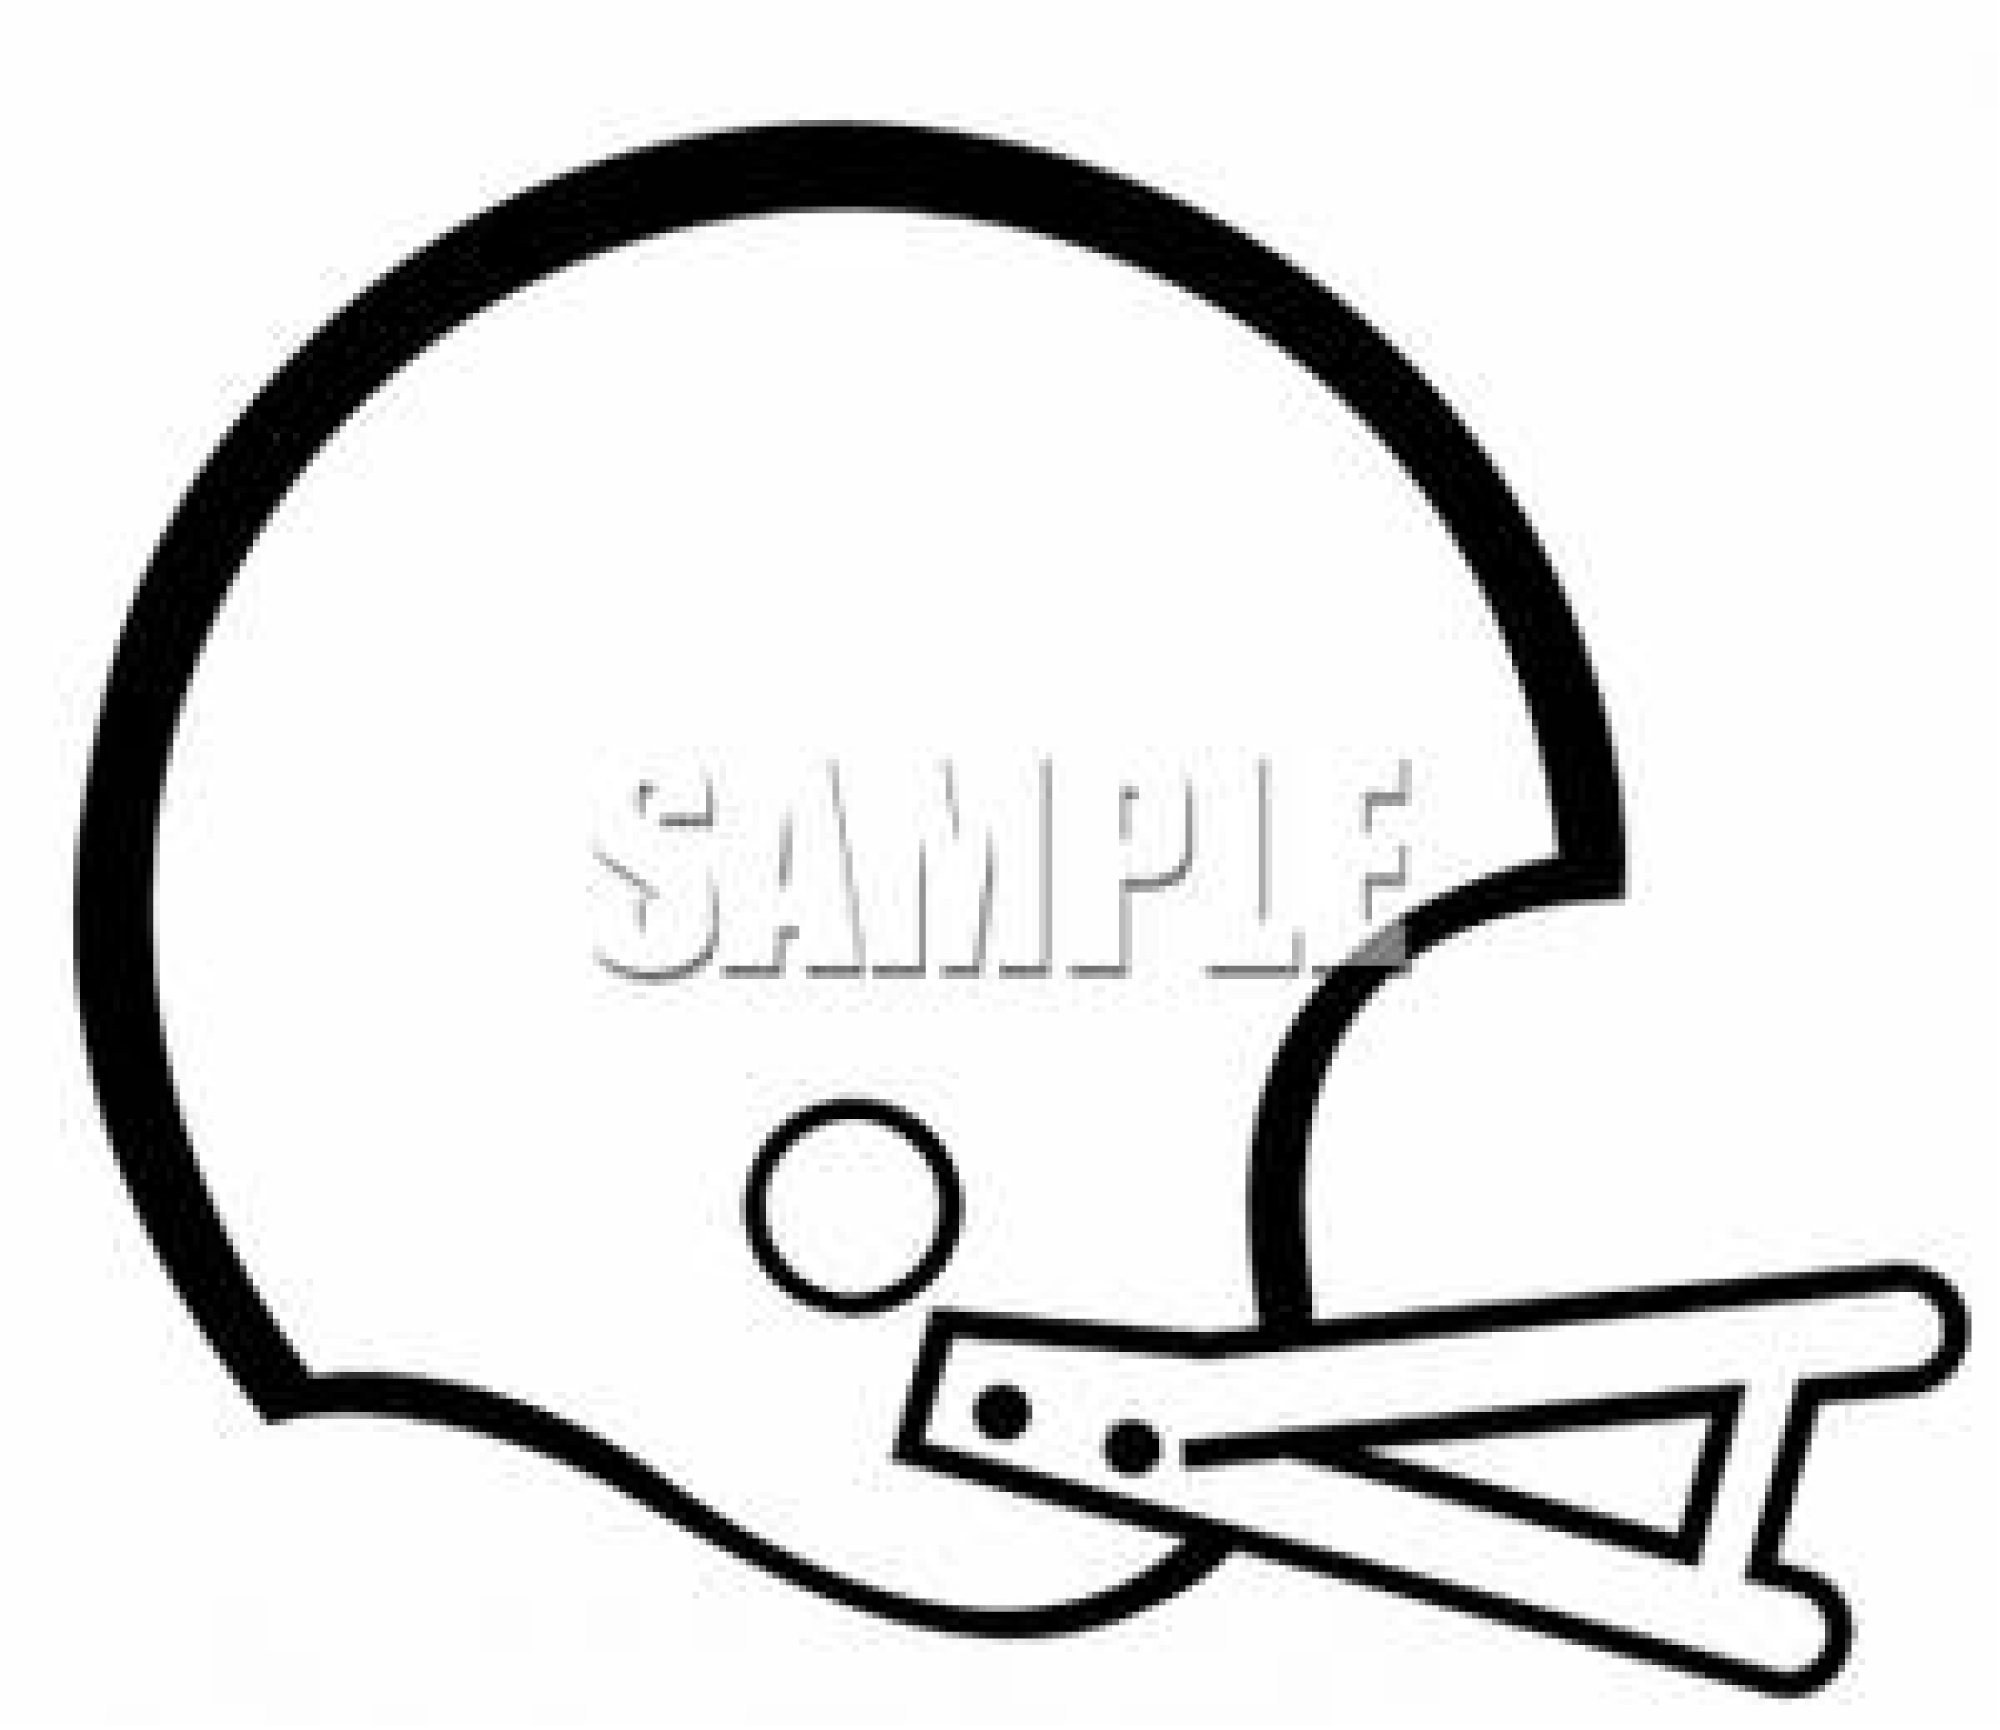 Football Helmet Clip Art At C